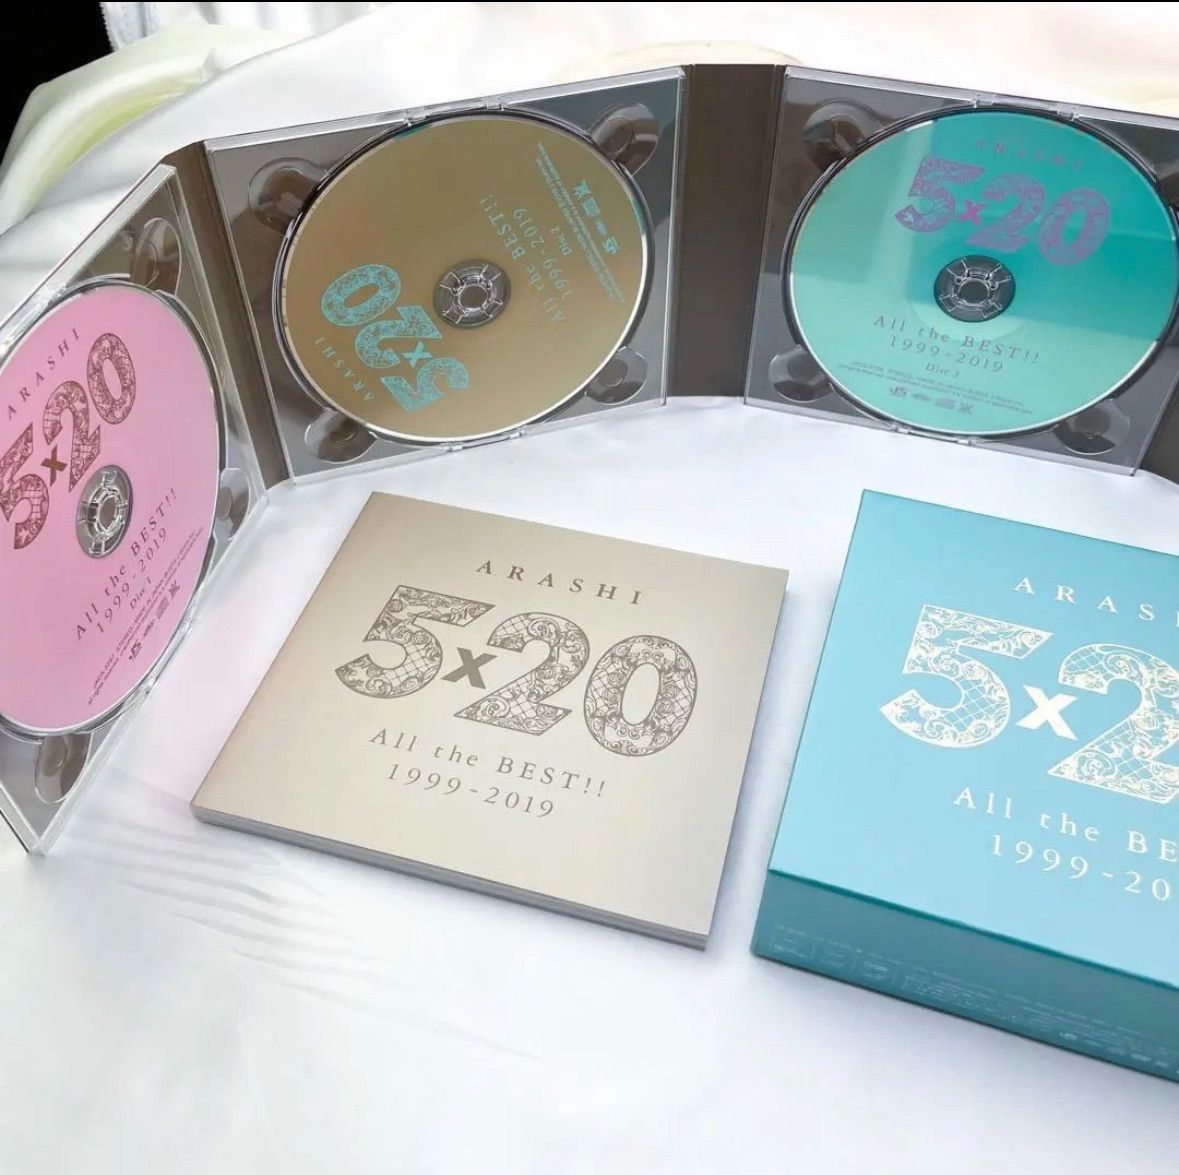 嵐 5×20 All the BEST!! 1999-2019 初回限定盤2 (A) - メルカリ